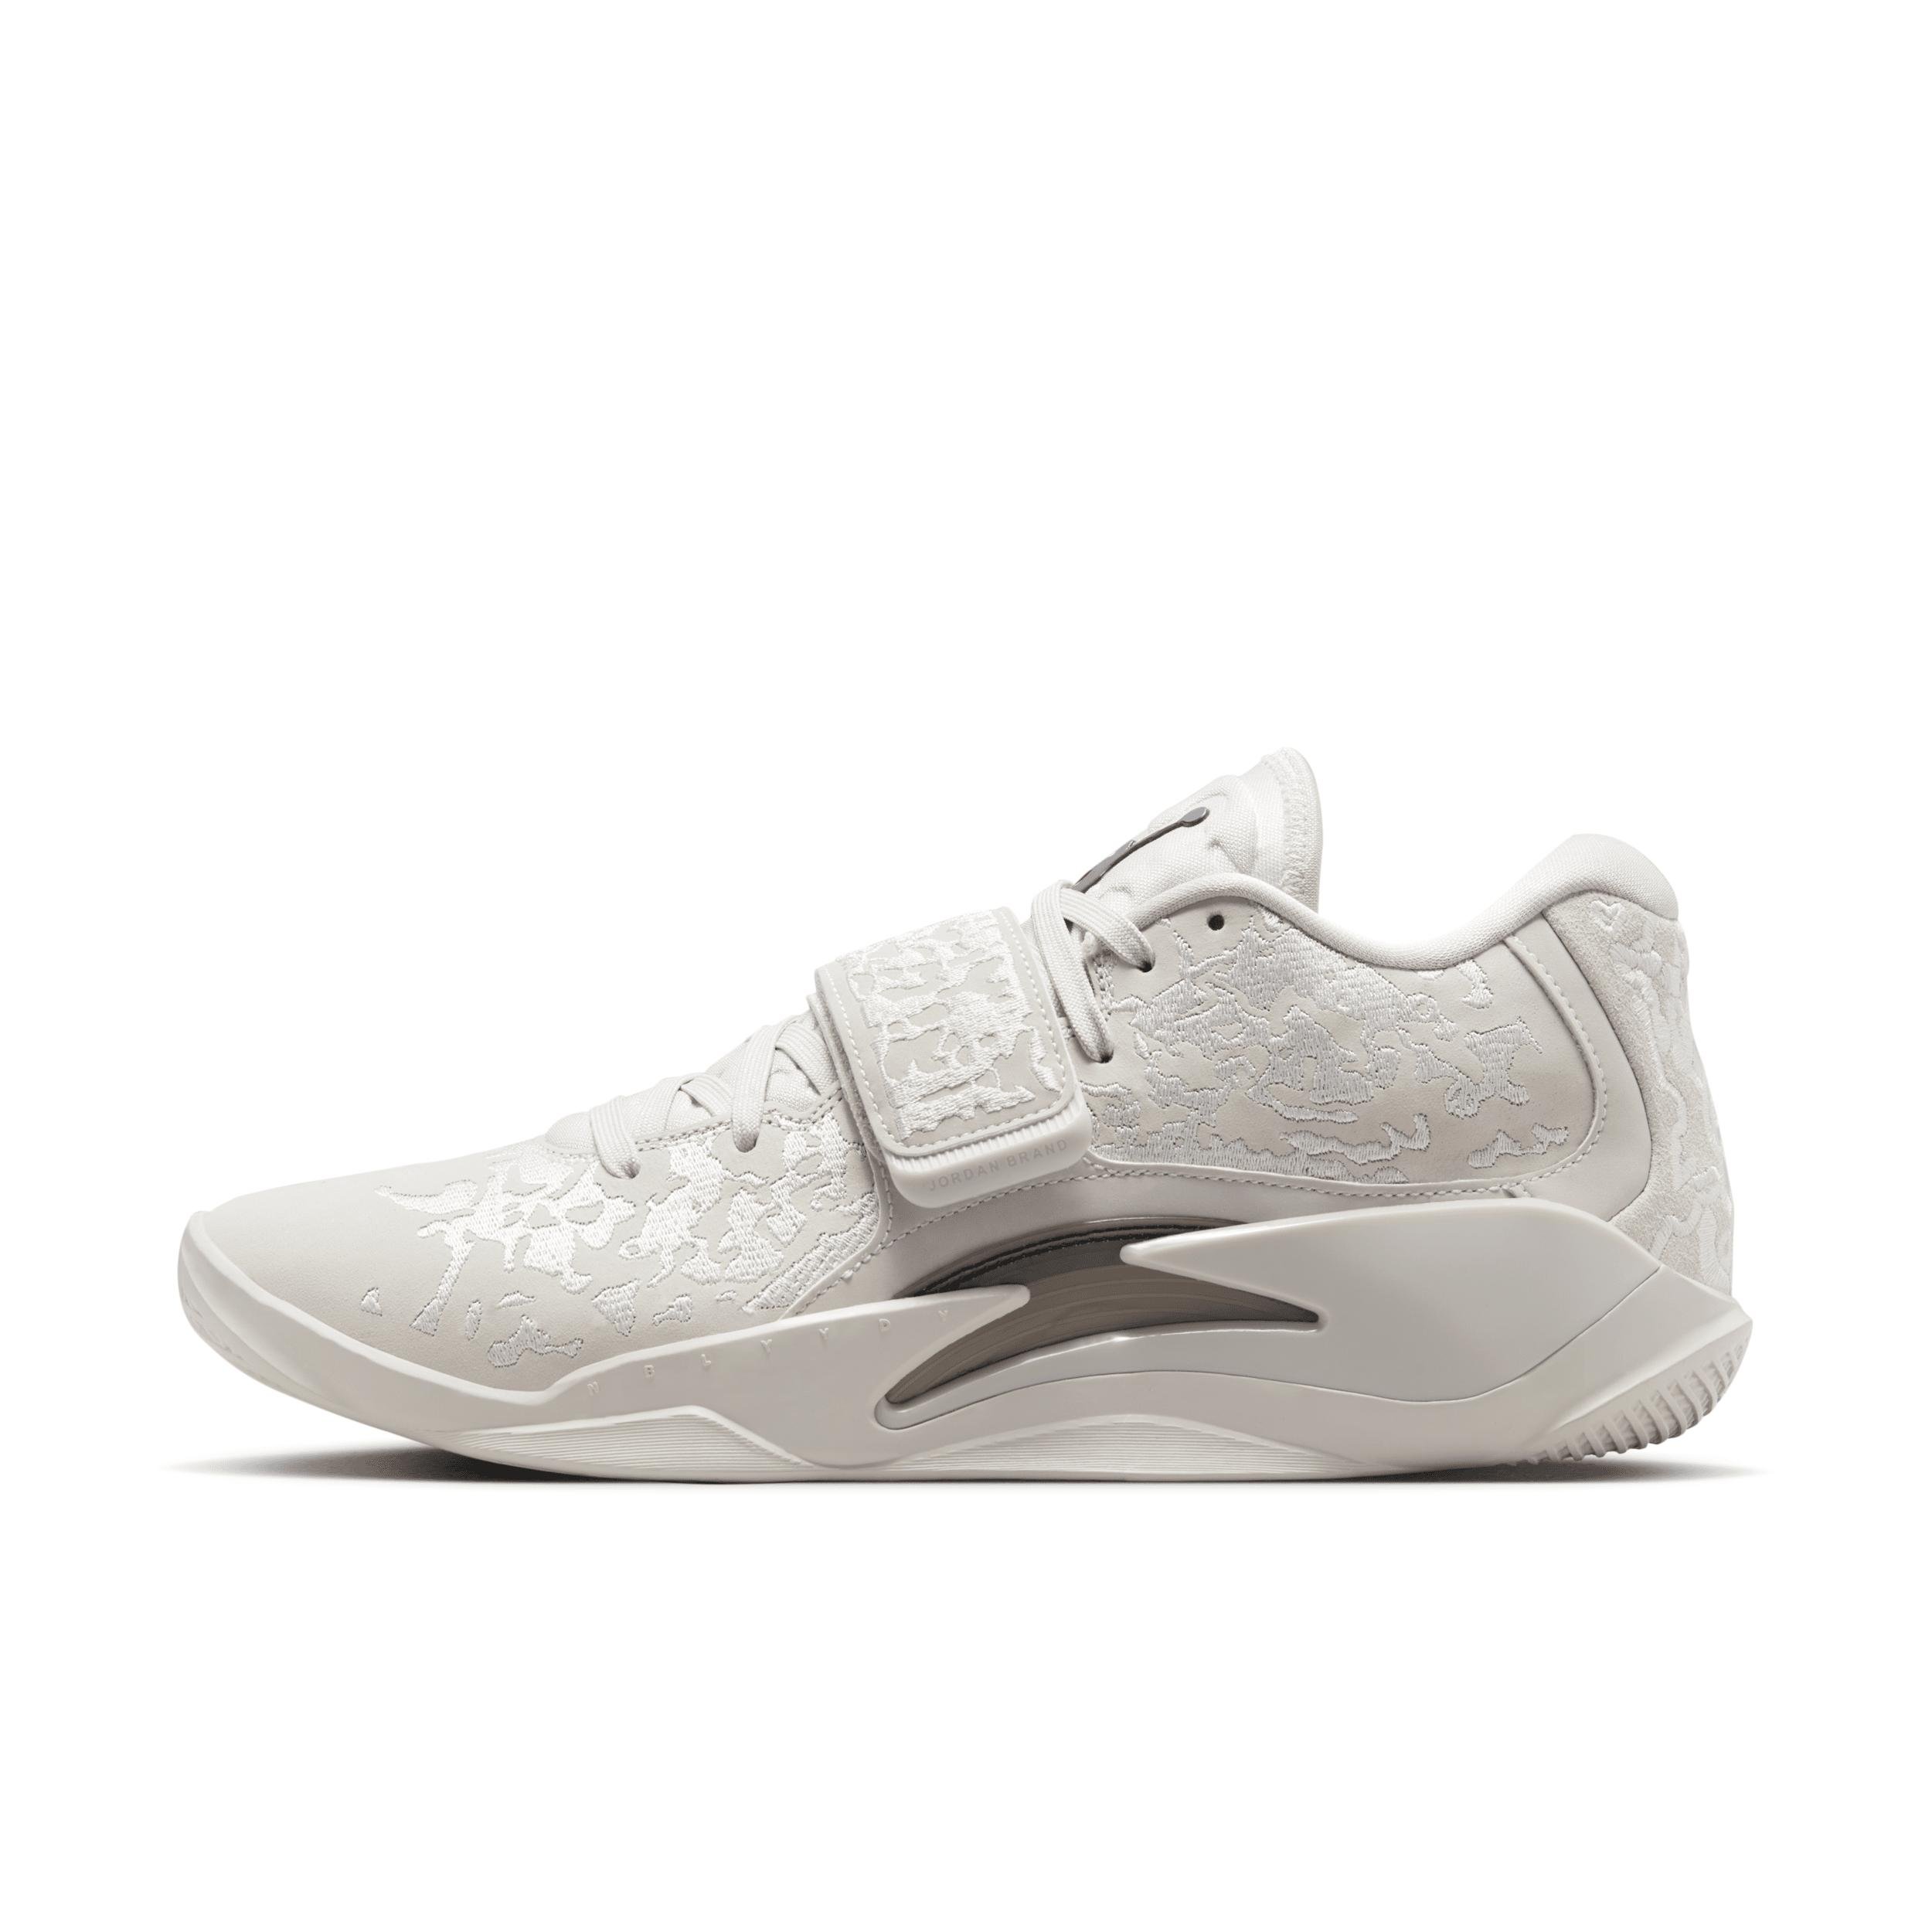 Nike Men's Zion 3 SE Basketball Shoes by JORDAN